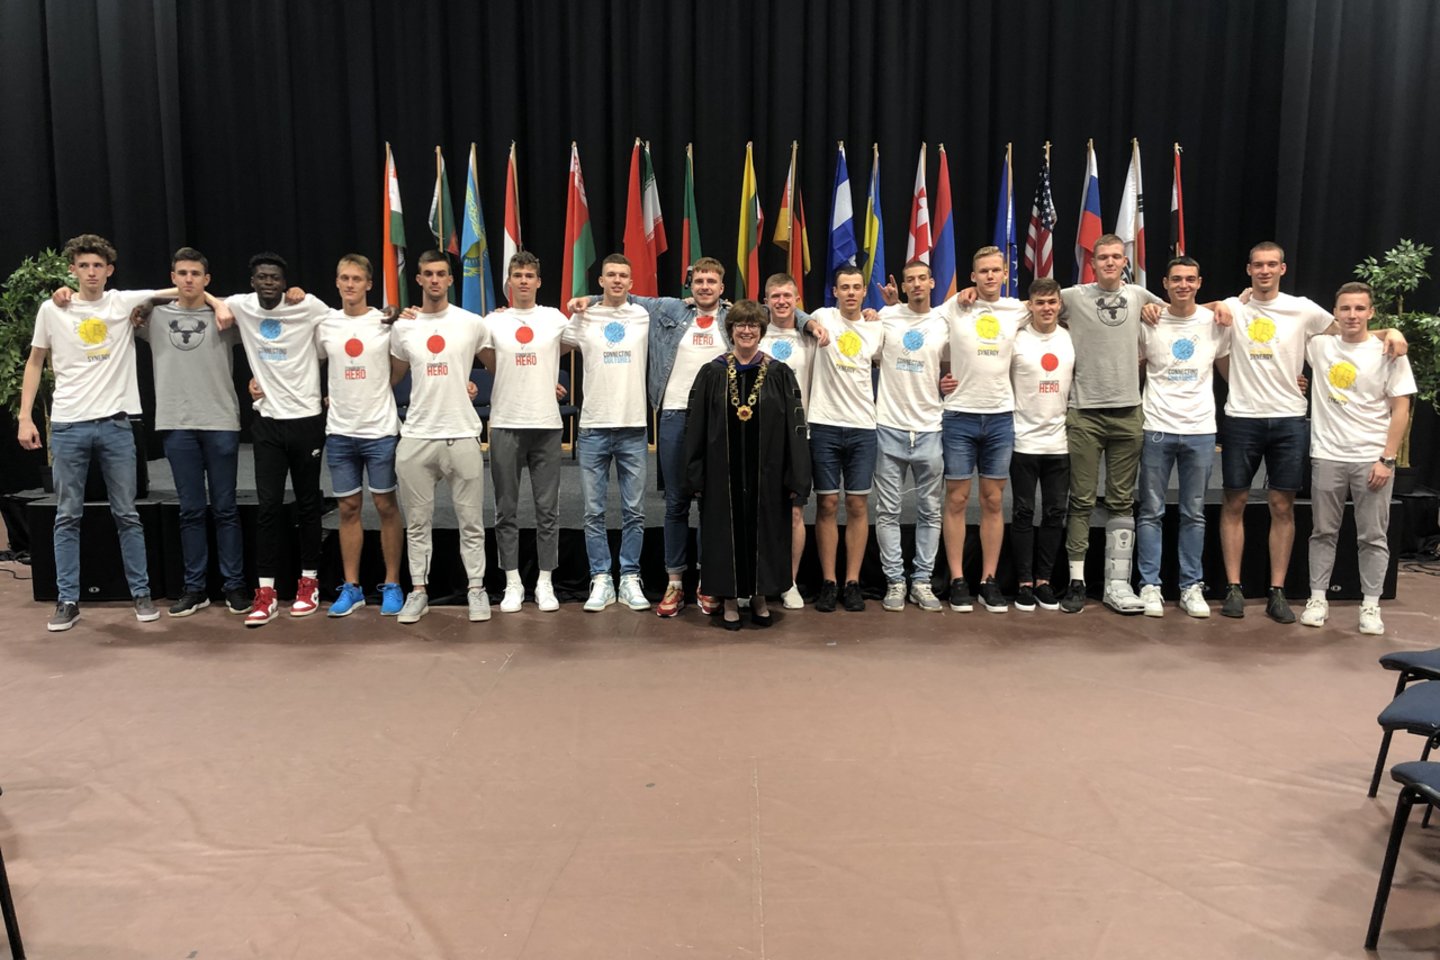  Dr. Wall su LCC tarptautinio universiteto krepšinio komanda, kurioje 2019 m žaidė studentai iš 7 valstybių.<br> Asmeninio archyvo nuotr.